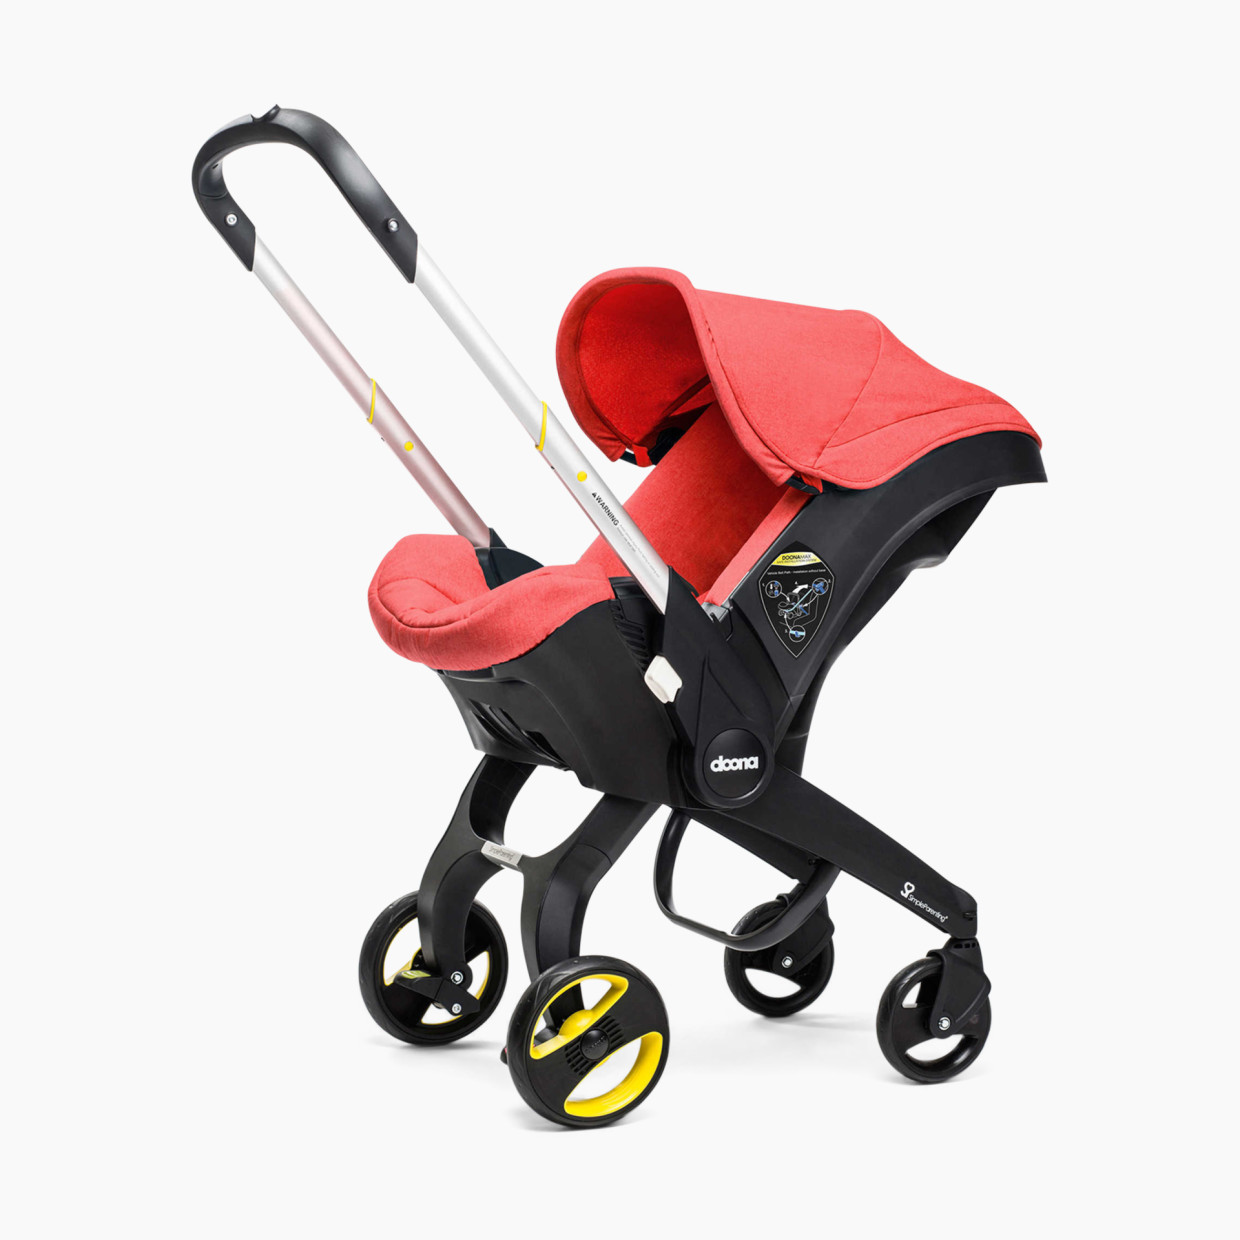 Doona Infant Car Seat/Stroller - Red/Love.